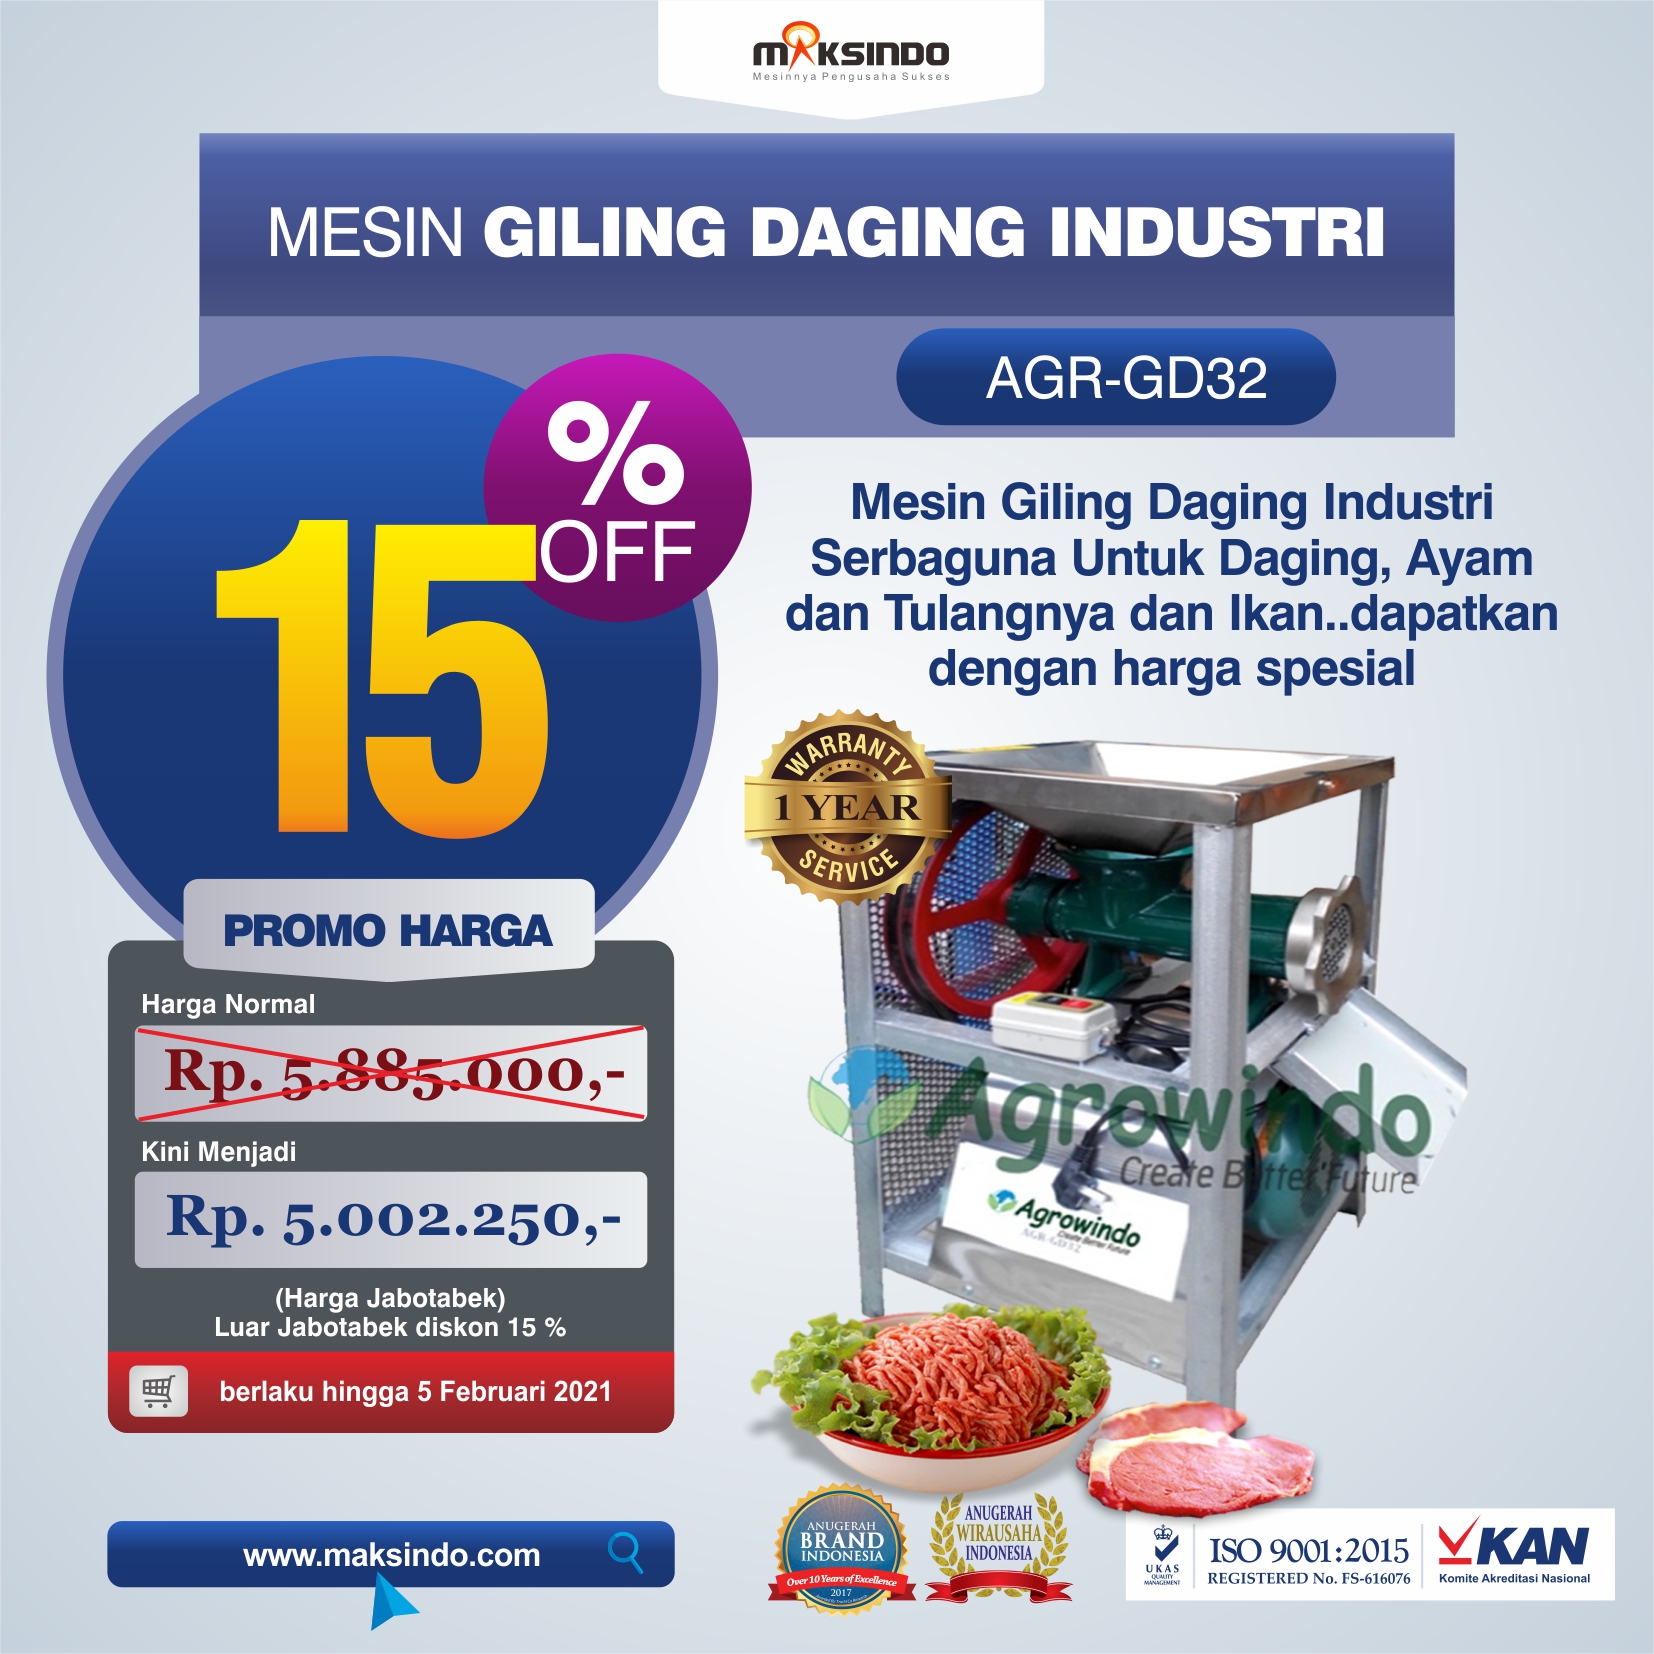 Jual Mesin Giling Daging Industri (AGR-GD32) di Bekasi